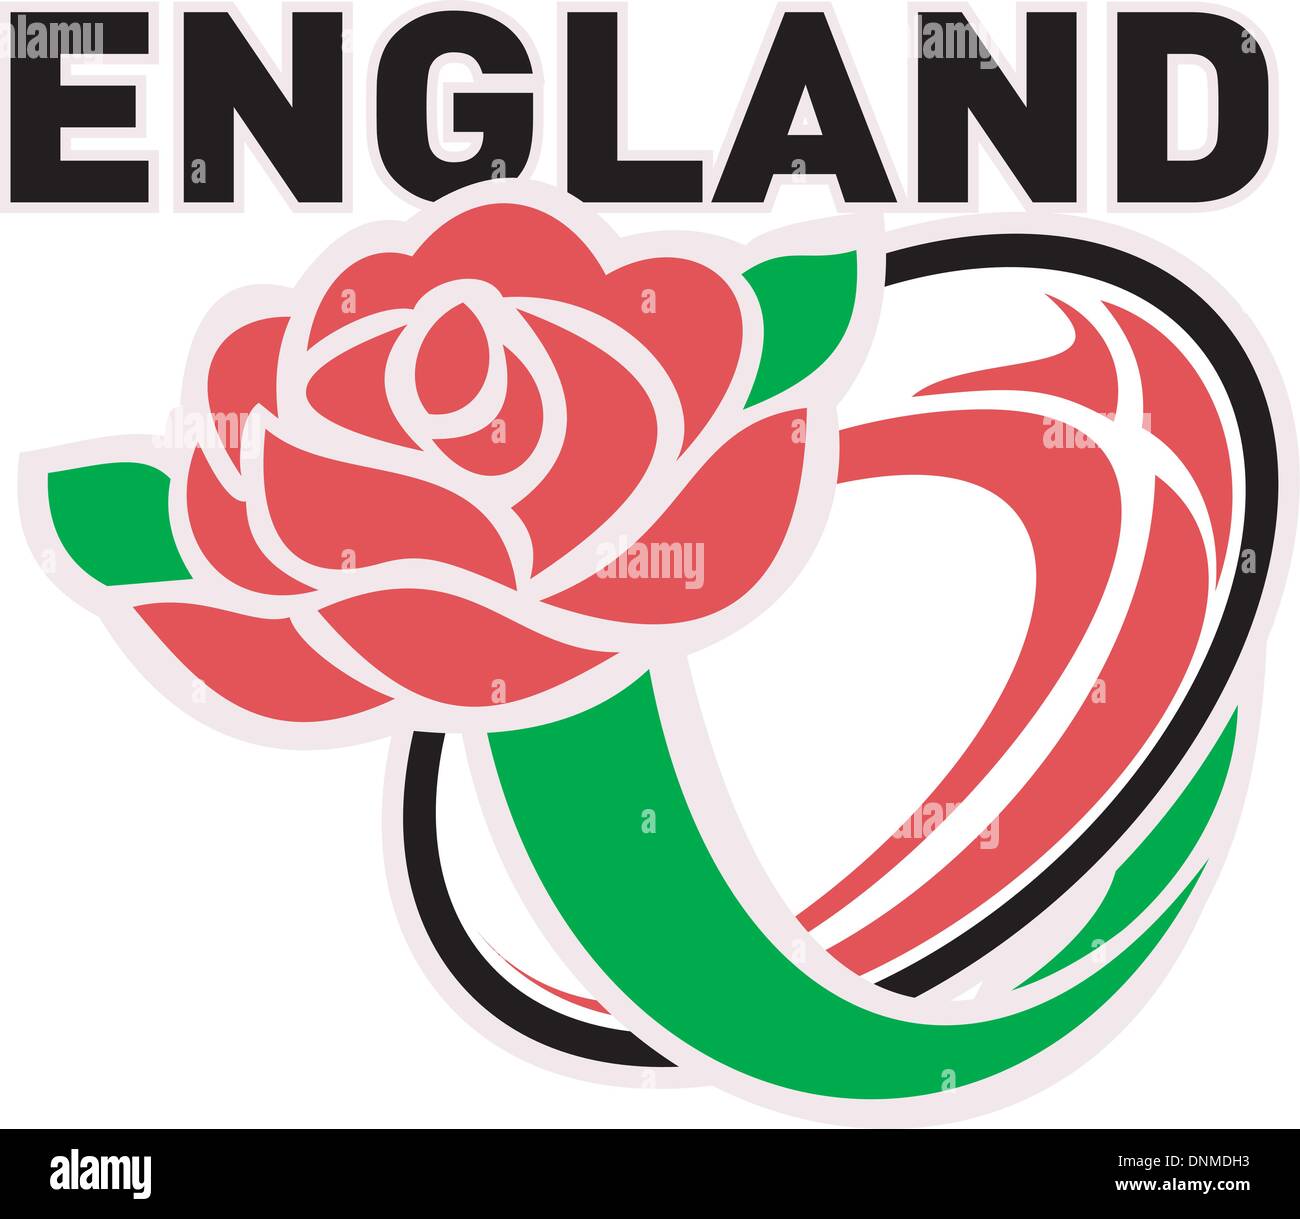 Abbildung von einem roten englischen rose mit Rugby-Ball fliegen aus und Worte "England" Stock Vektor